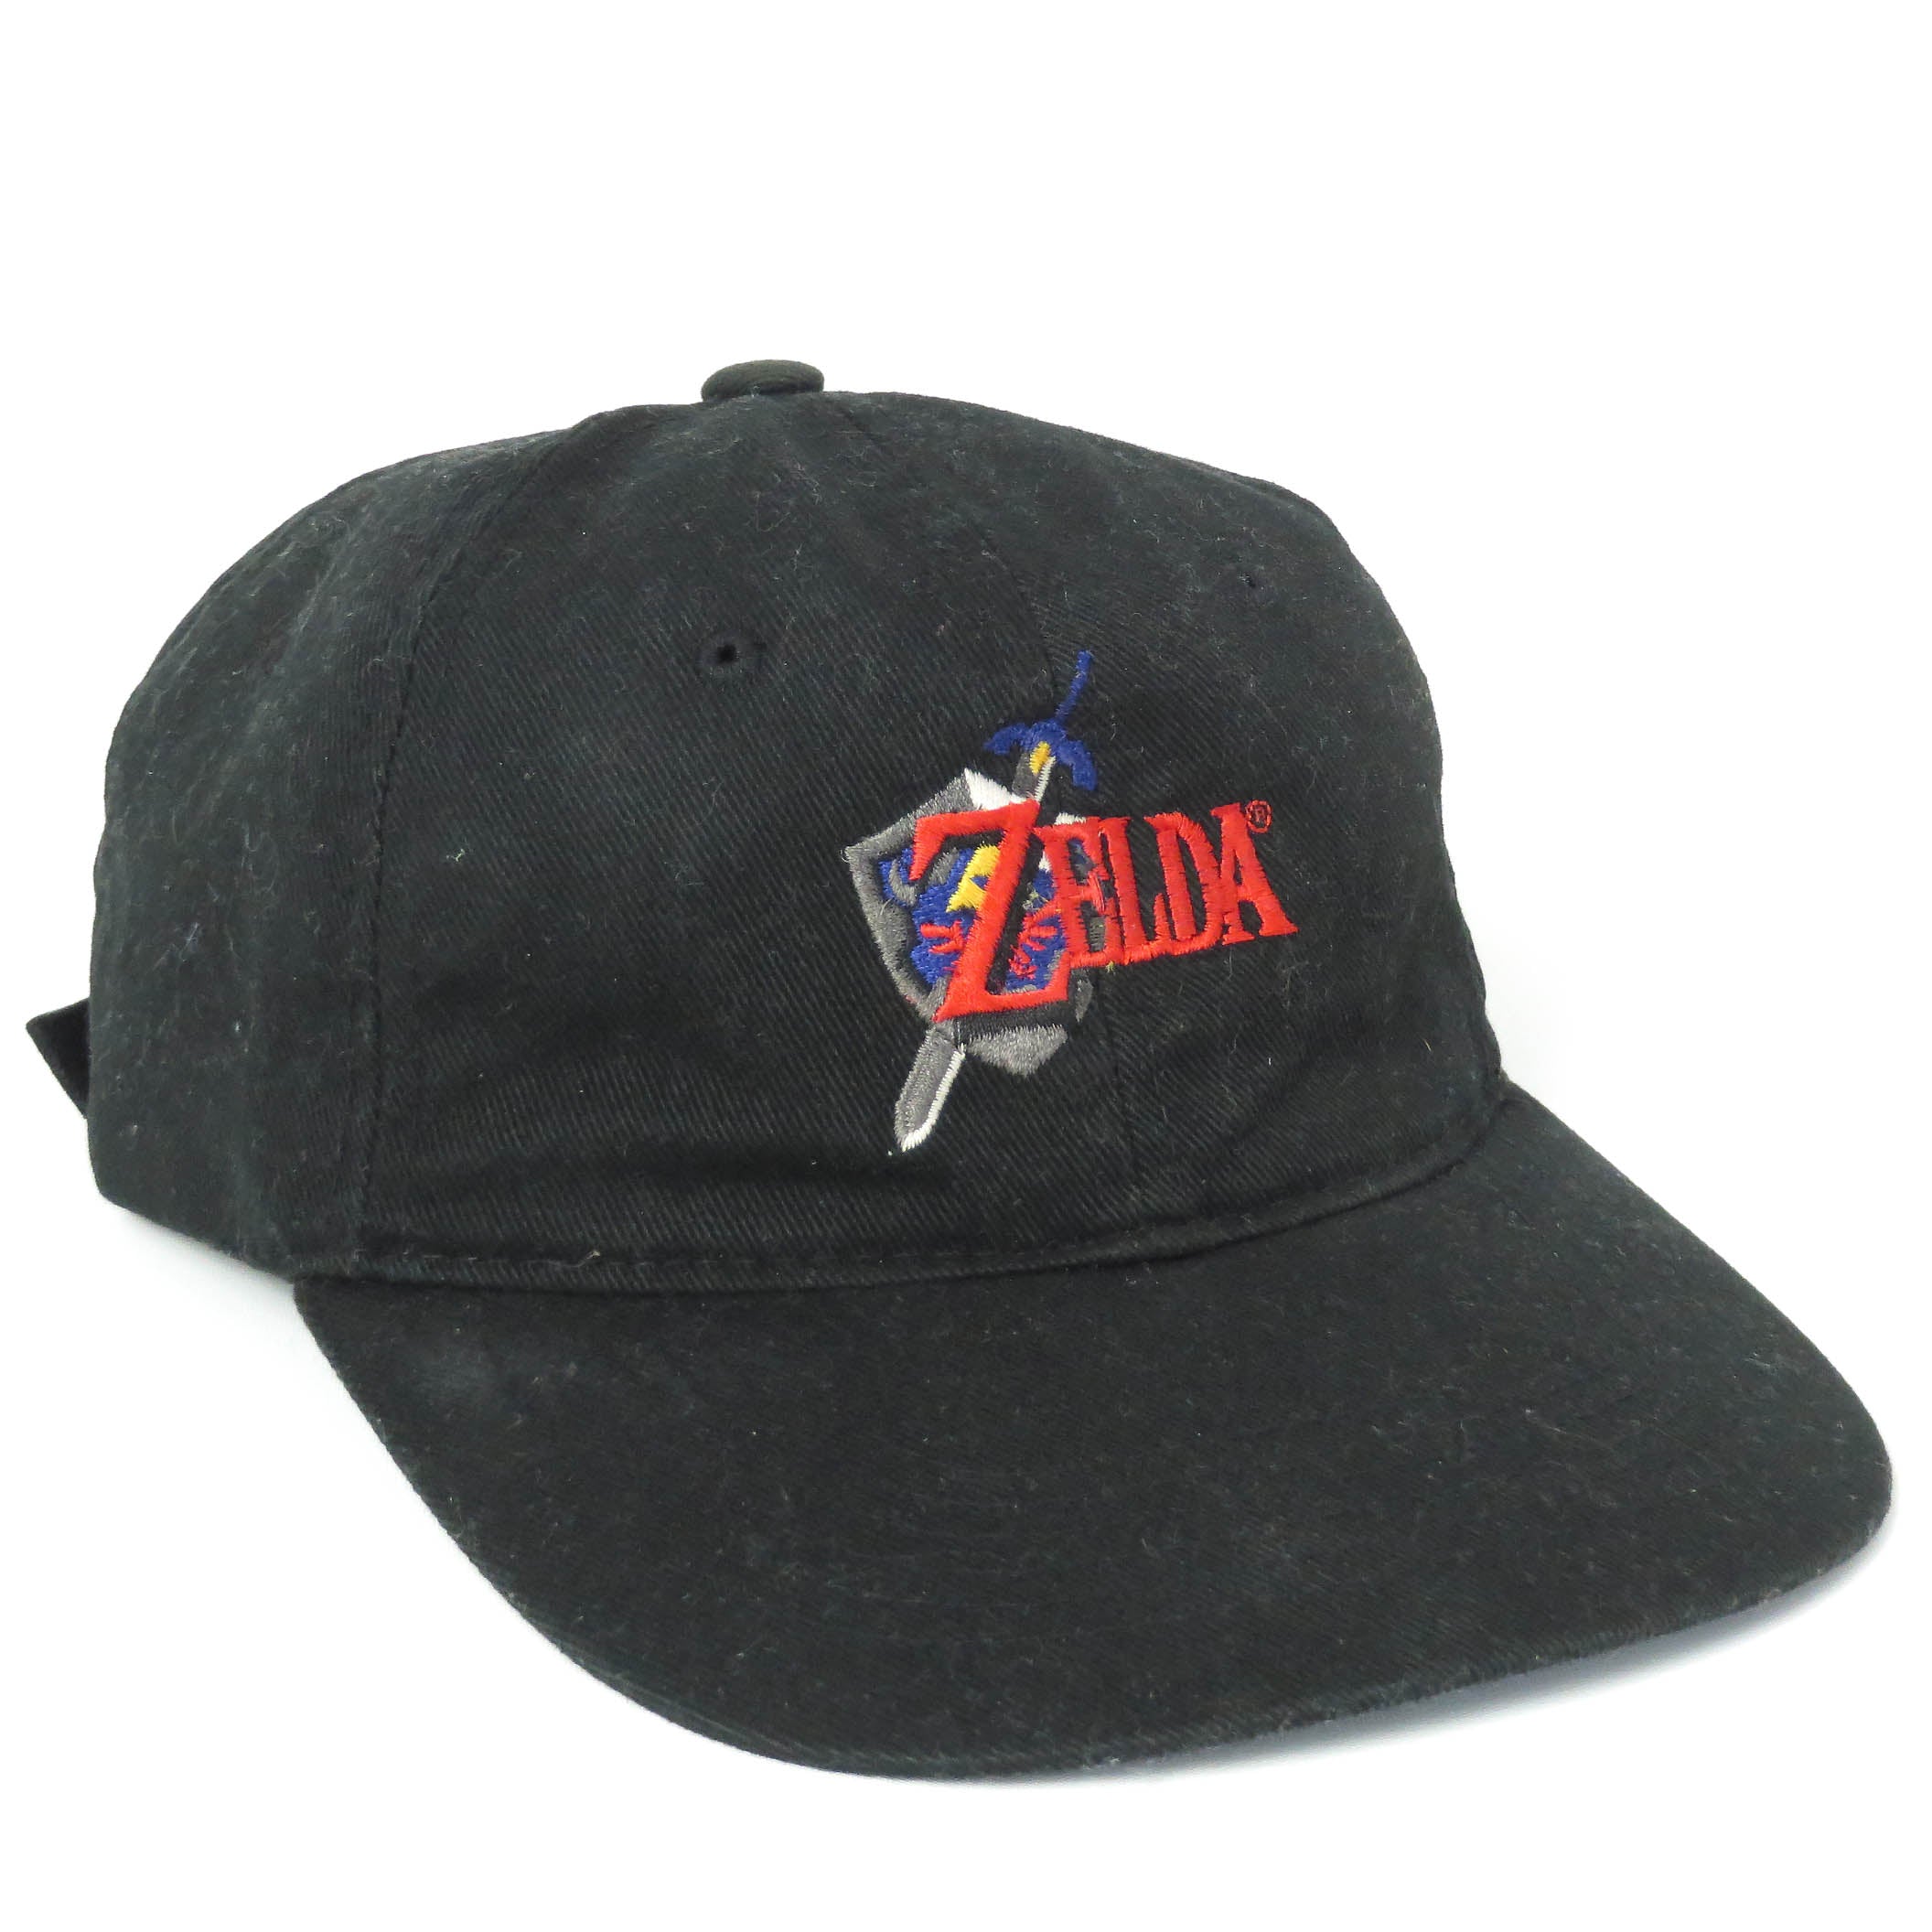 Vintage 1998 Zelda Nintendo 64 Strapback Hat